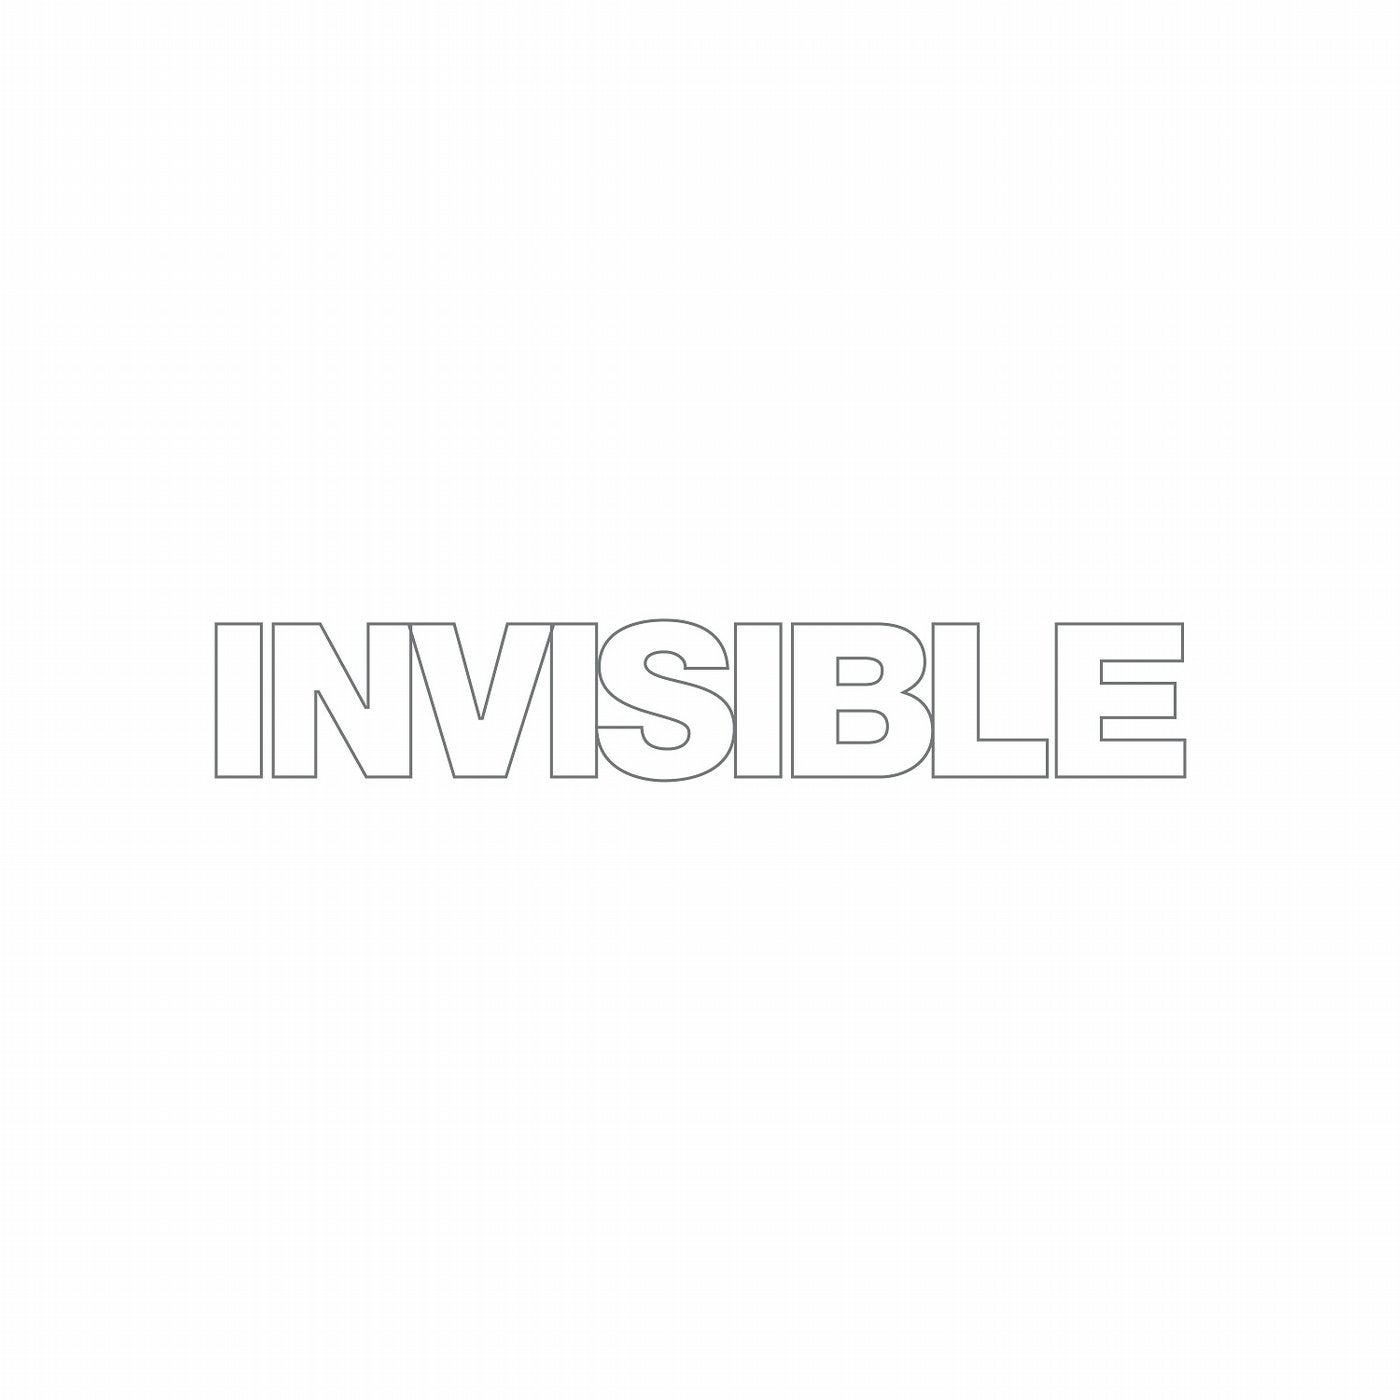 Invisible 026